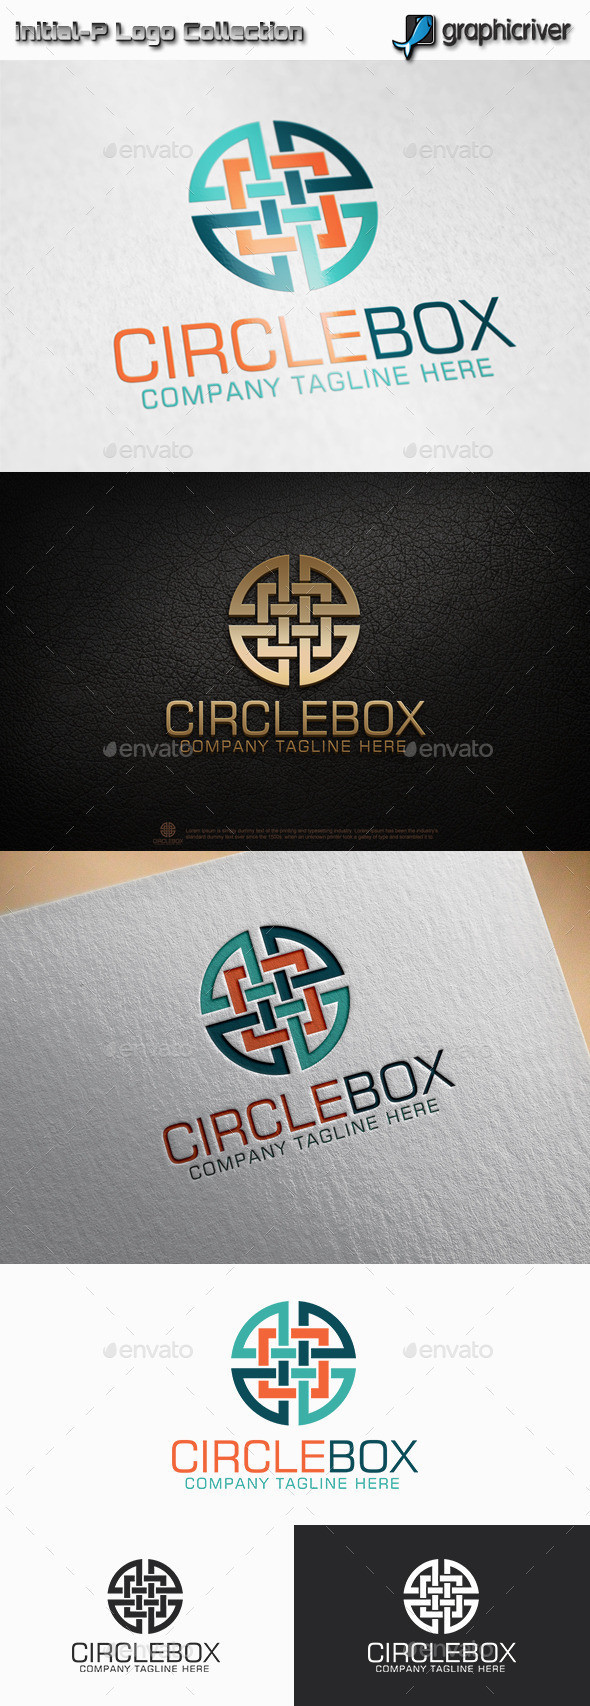 Circle 20box 20preview